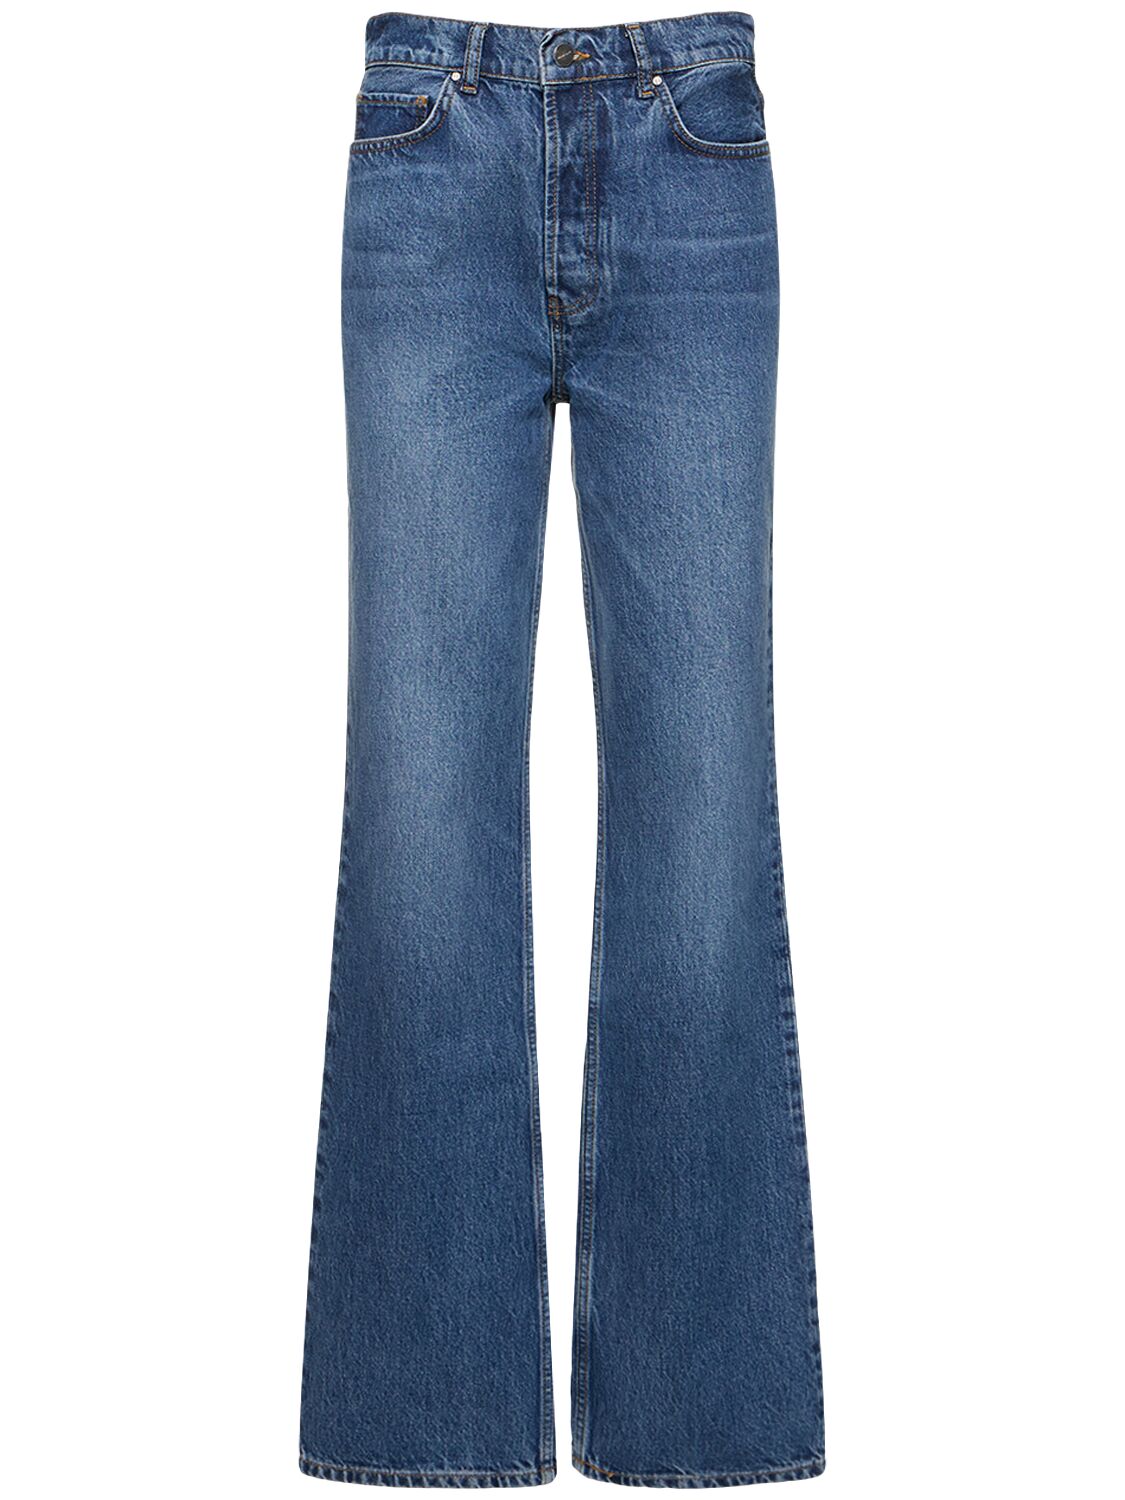 Olsen High Rise Straight Jeans